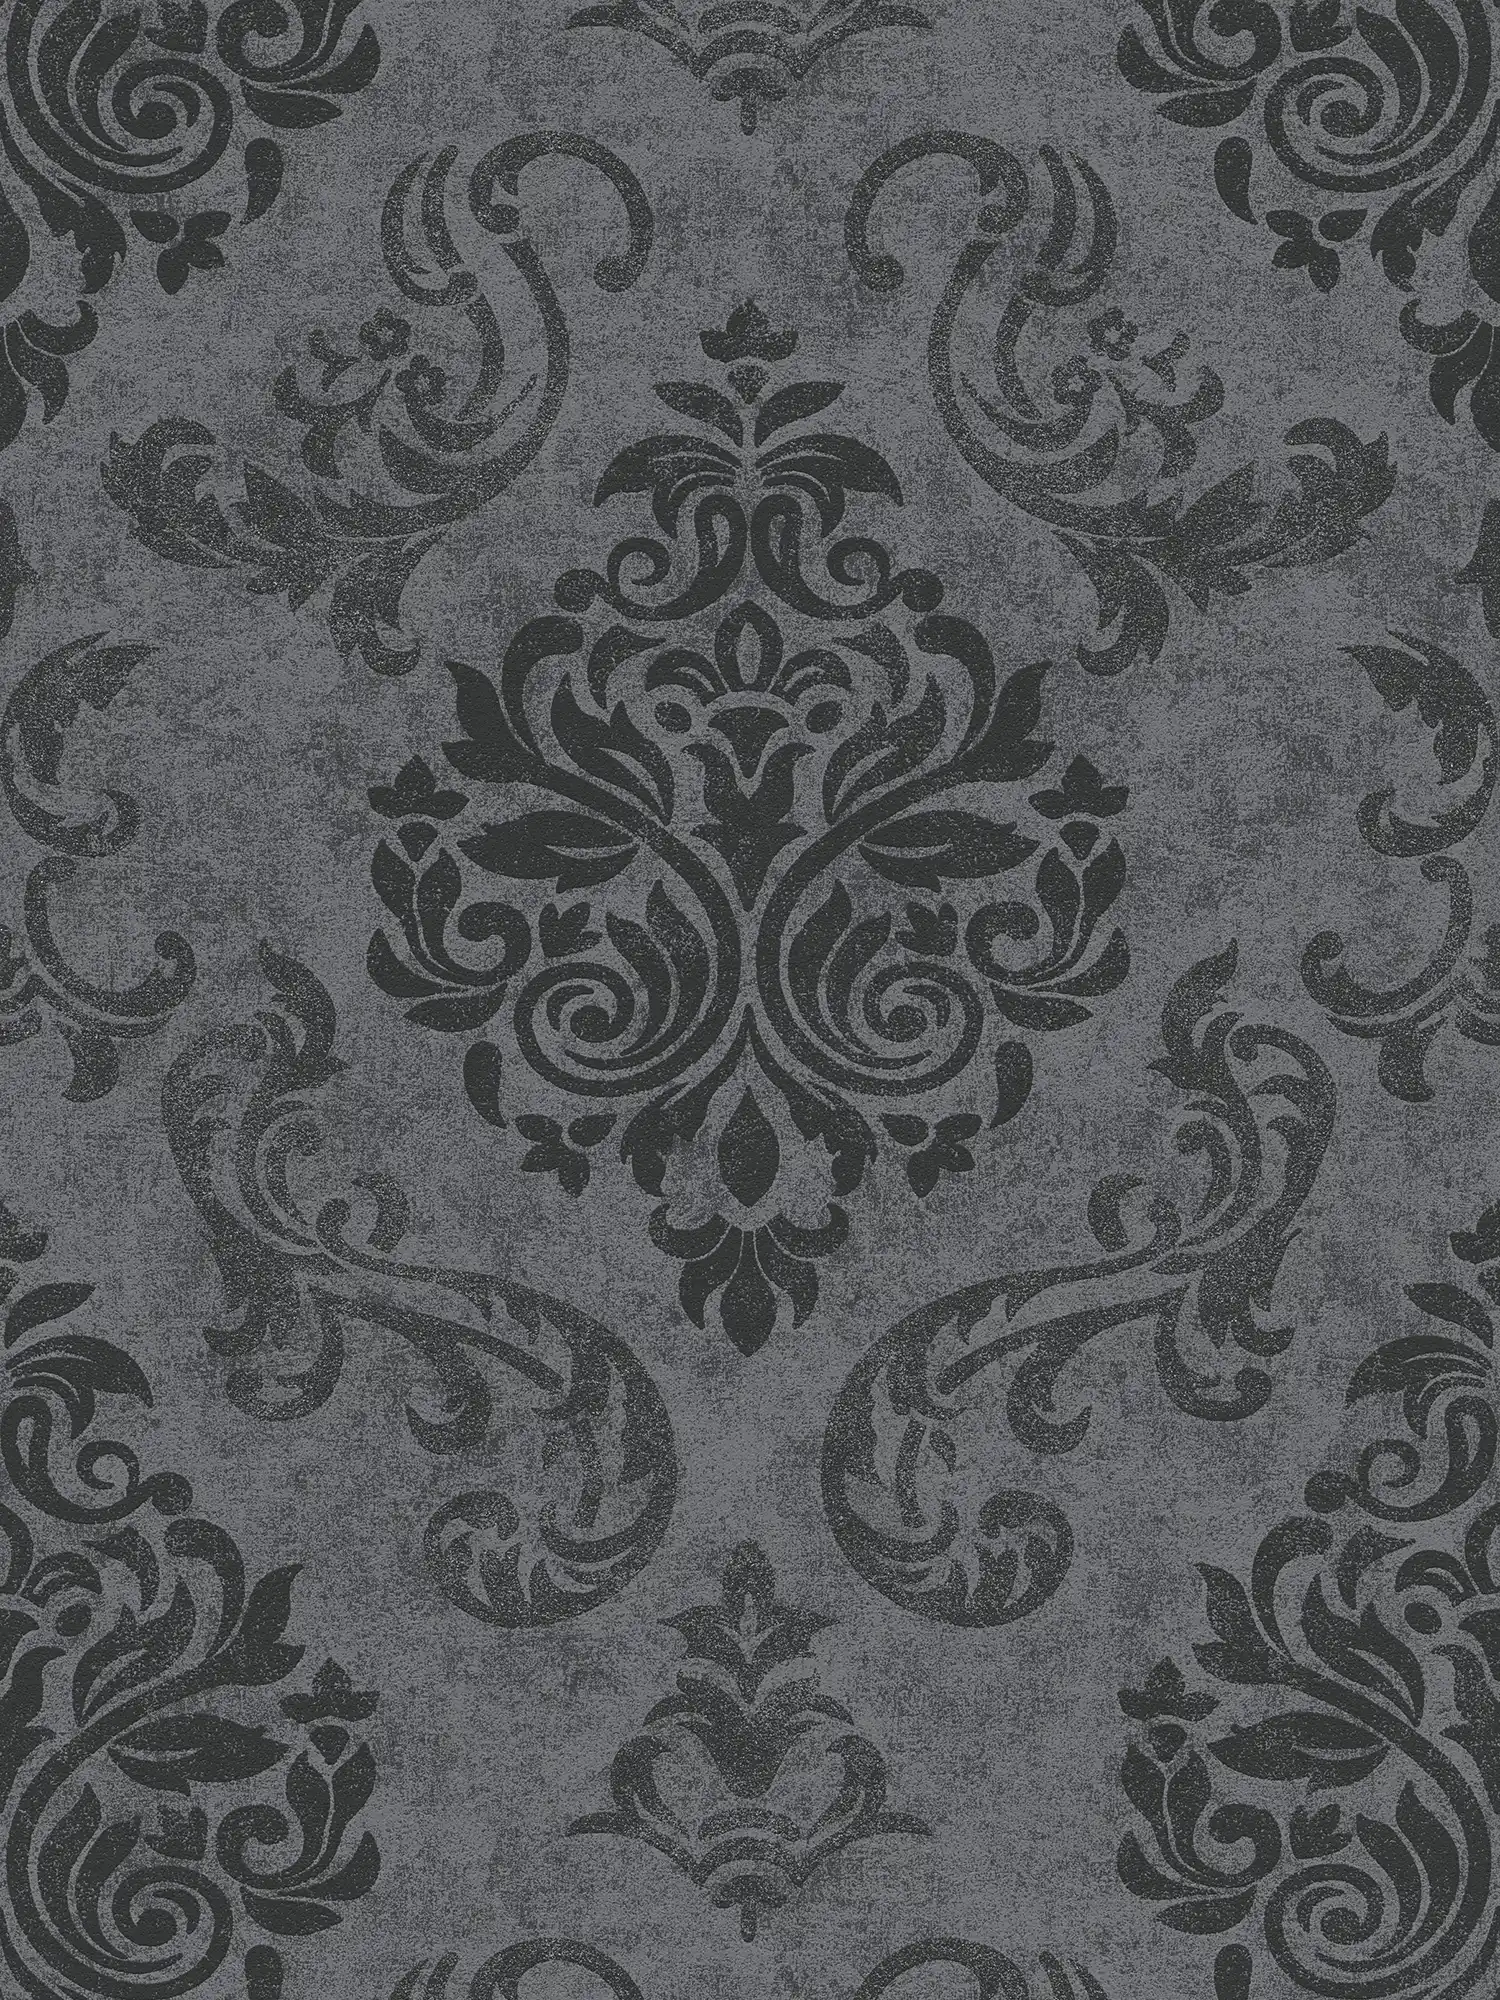 Papel pintado de adornos de estilo barroco con efecto de brillo - gris, metálico, negro
